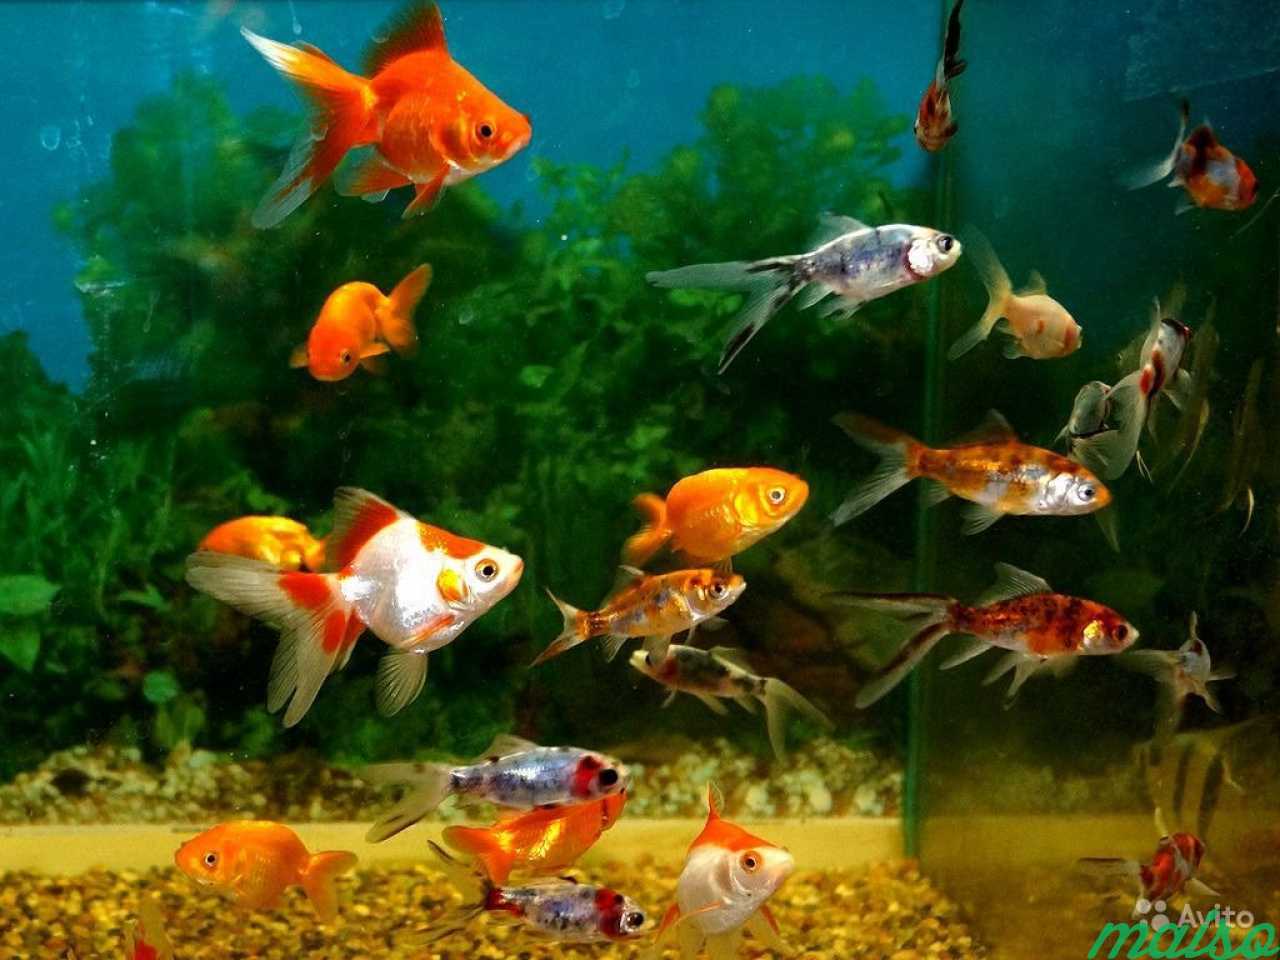 Увидел рыбок в аквариуме. Рыбки для аквариума. Золотая рыбка. Красивые рыбки для аквариума. Аквариумные рыбки в аквариуме.